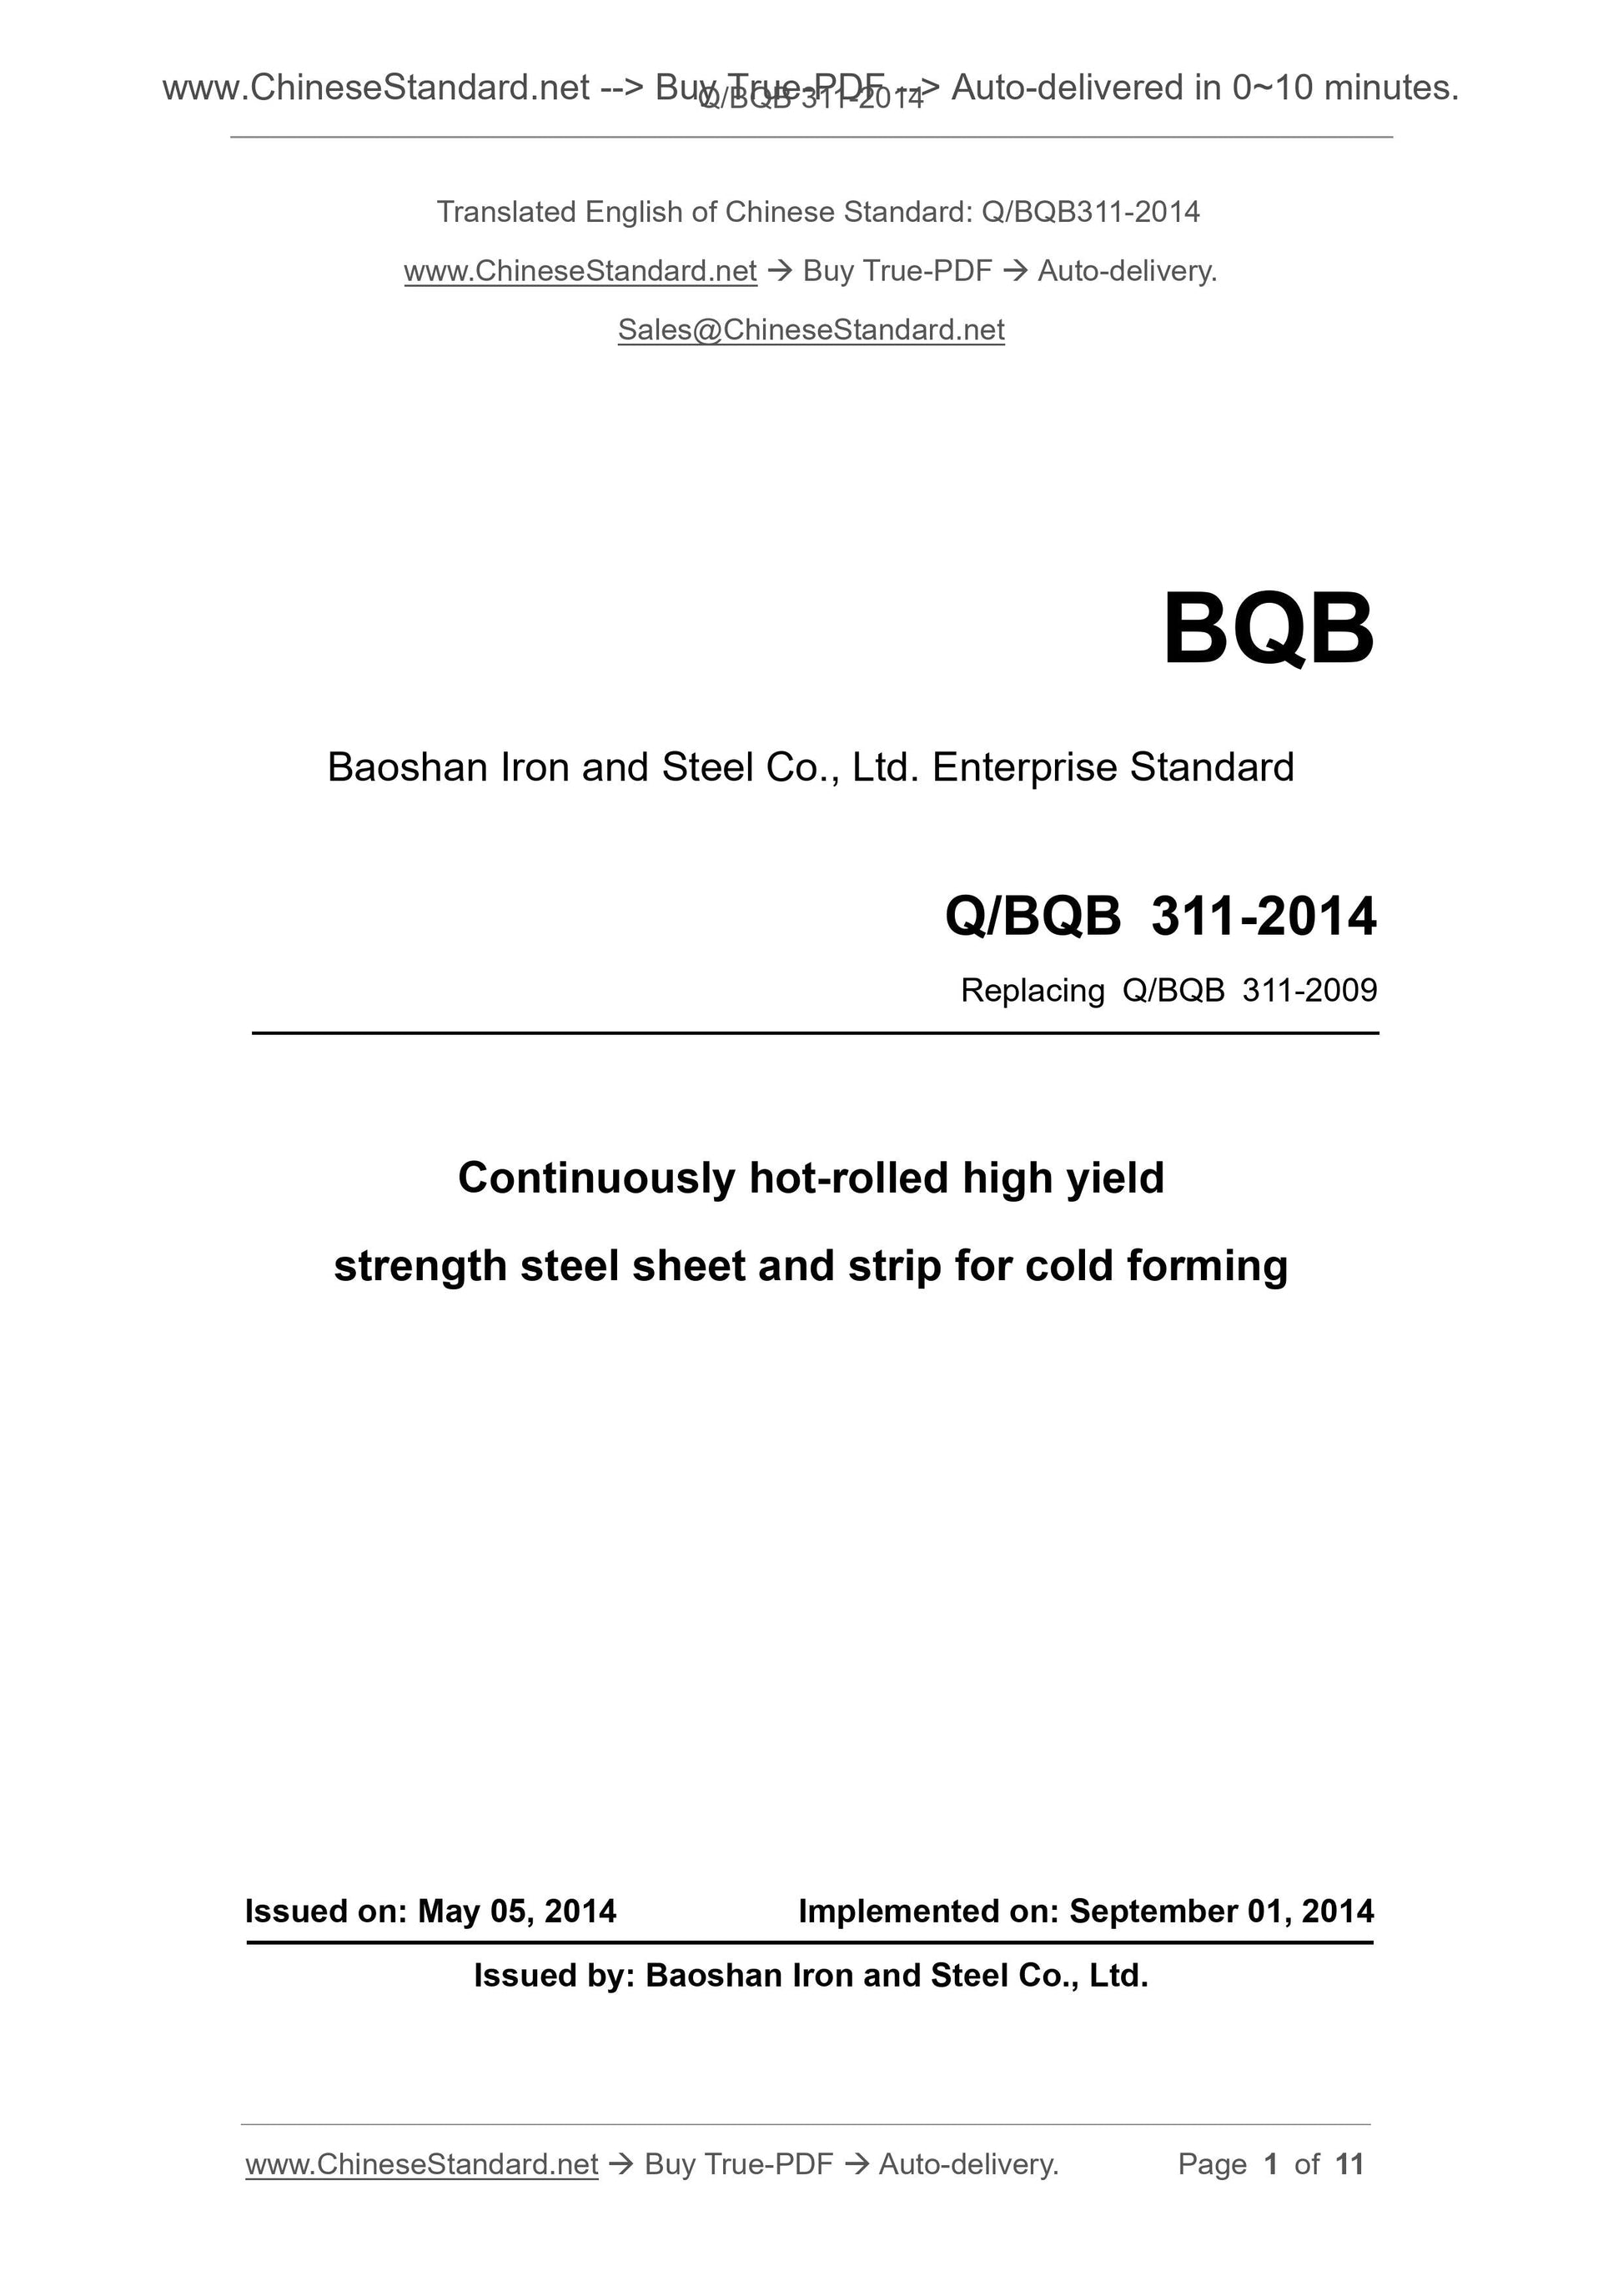 Q/BQB 311-2014 Page 1